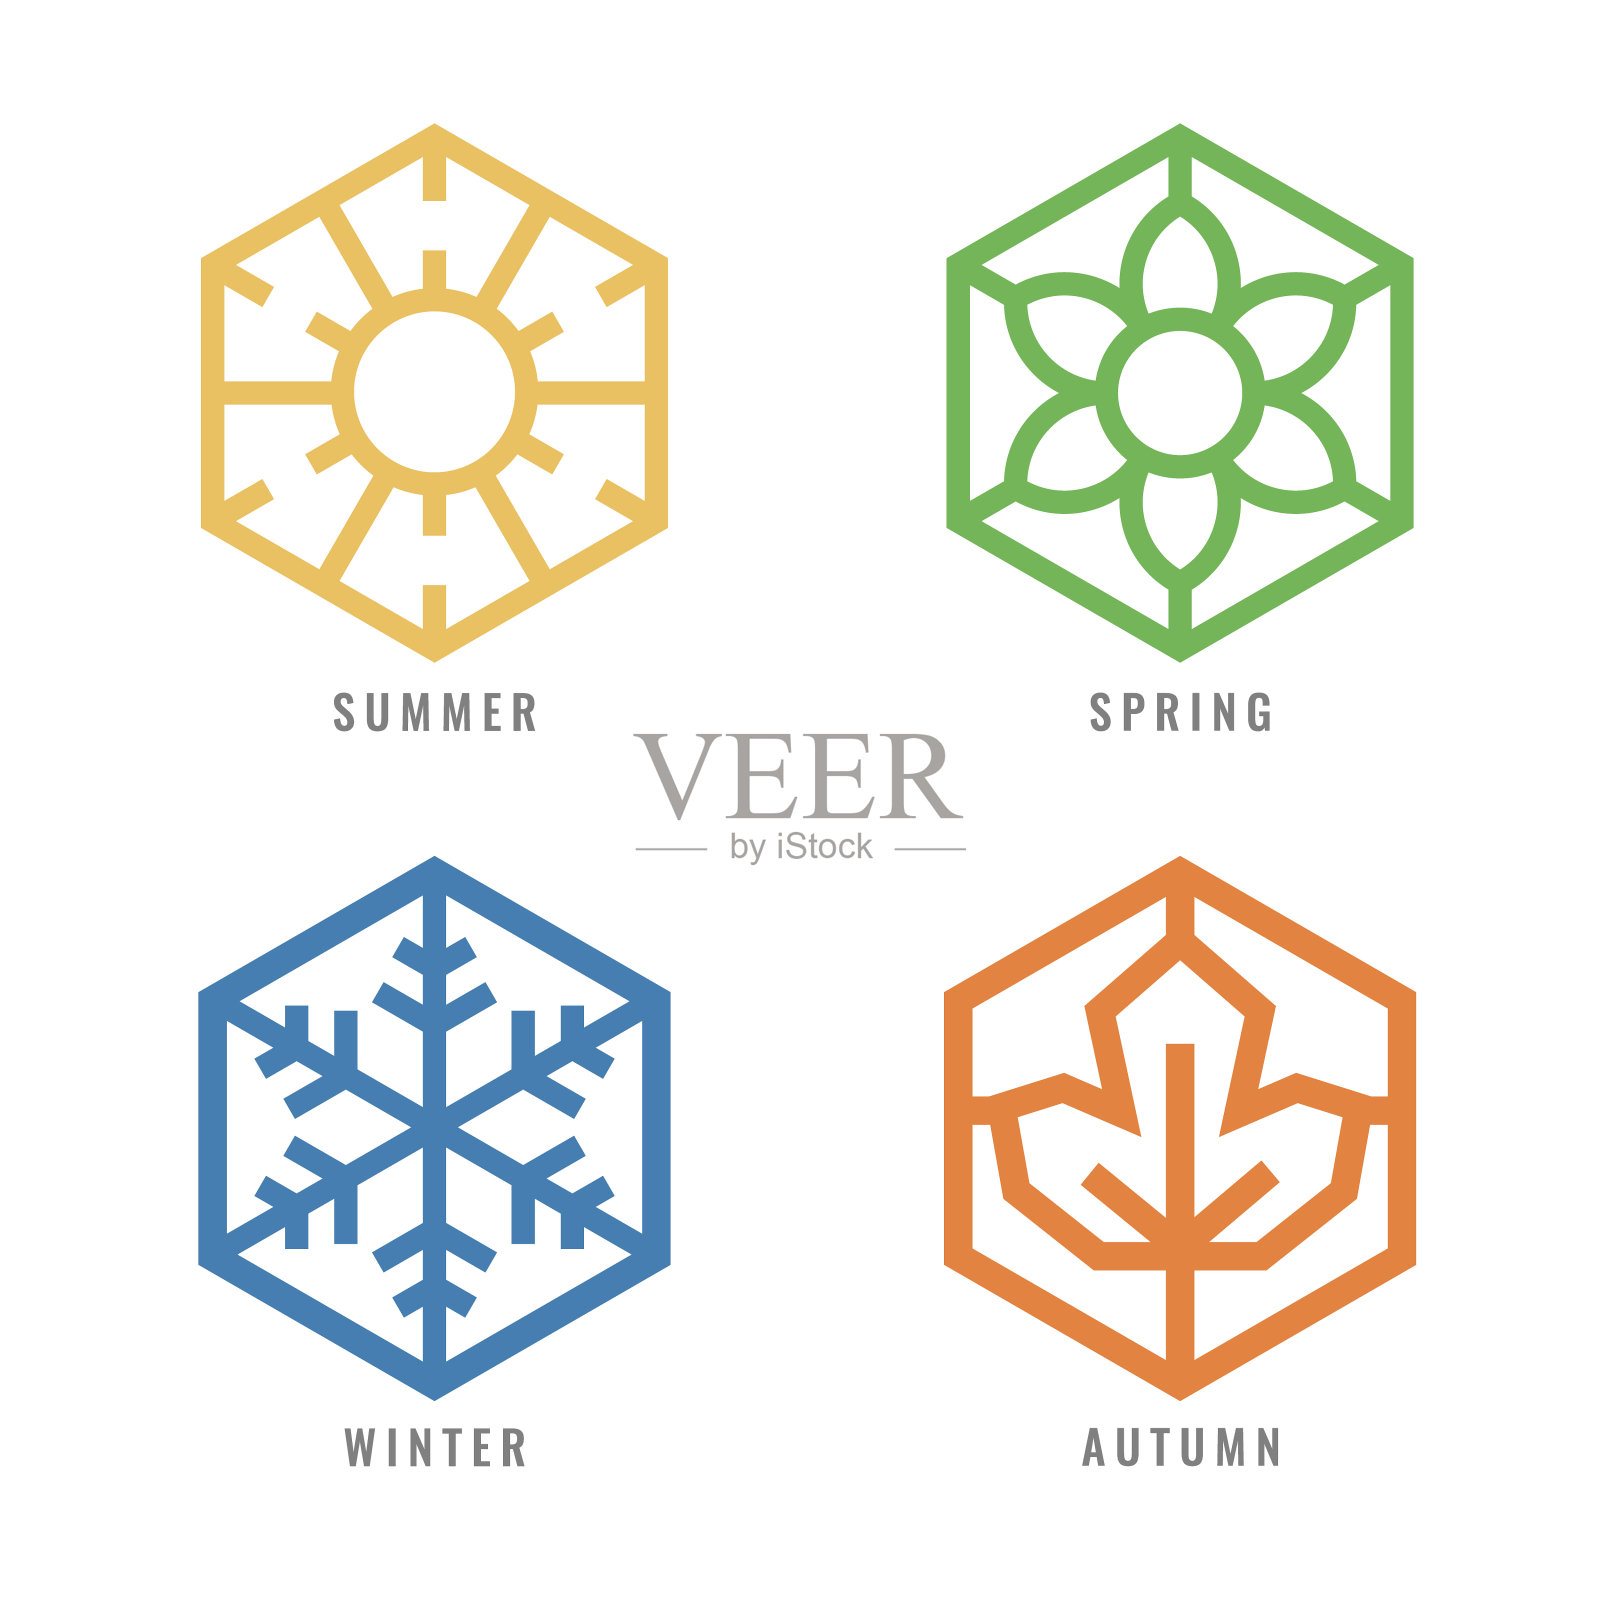 六角形图标，夏季太阳标志，春季花朵标志，冬季雪花标志，秋季枫叶矢量设计插画图片素材